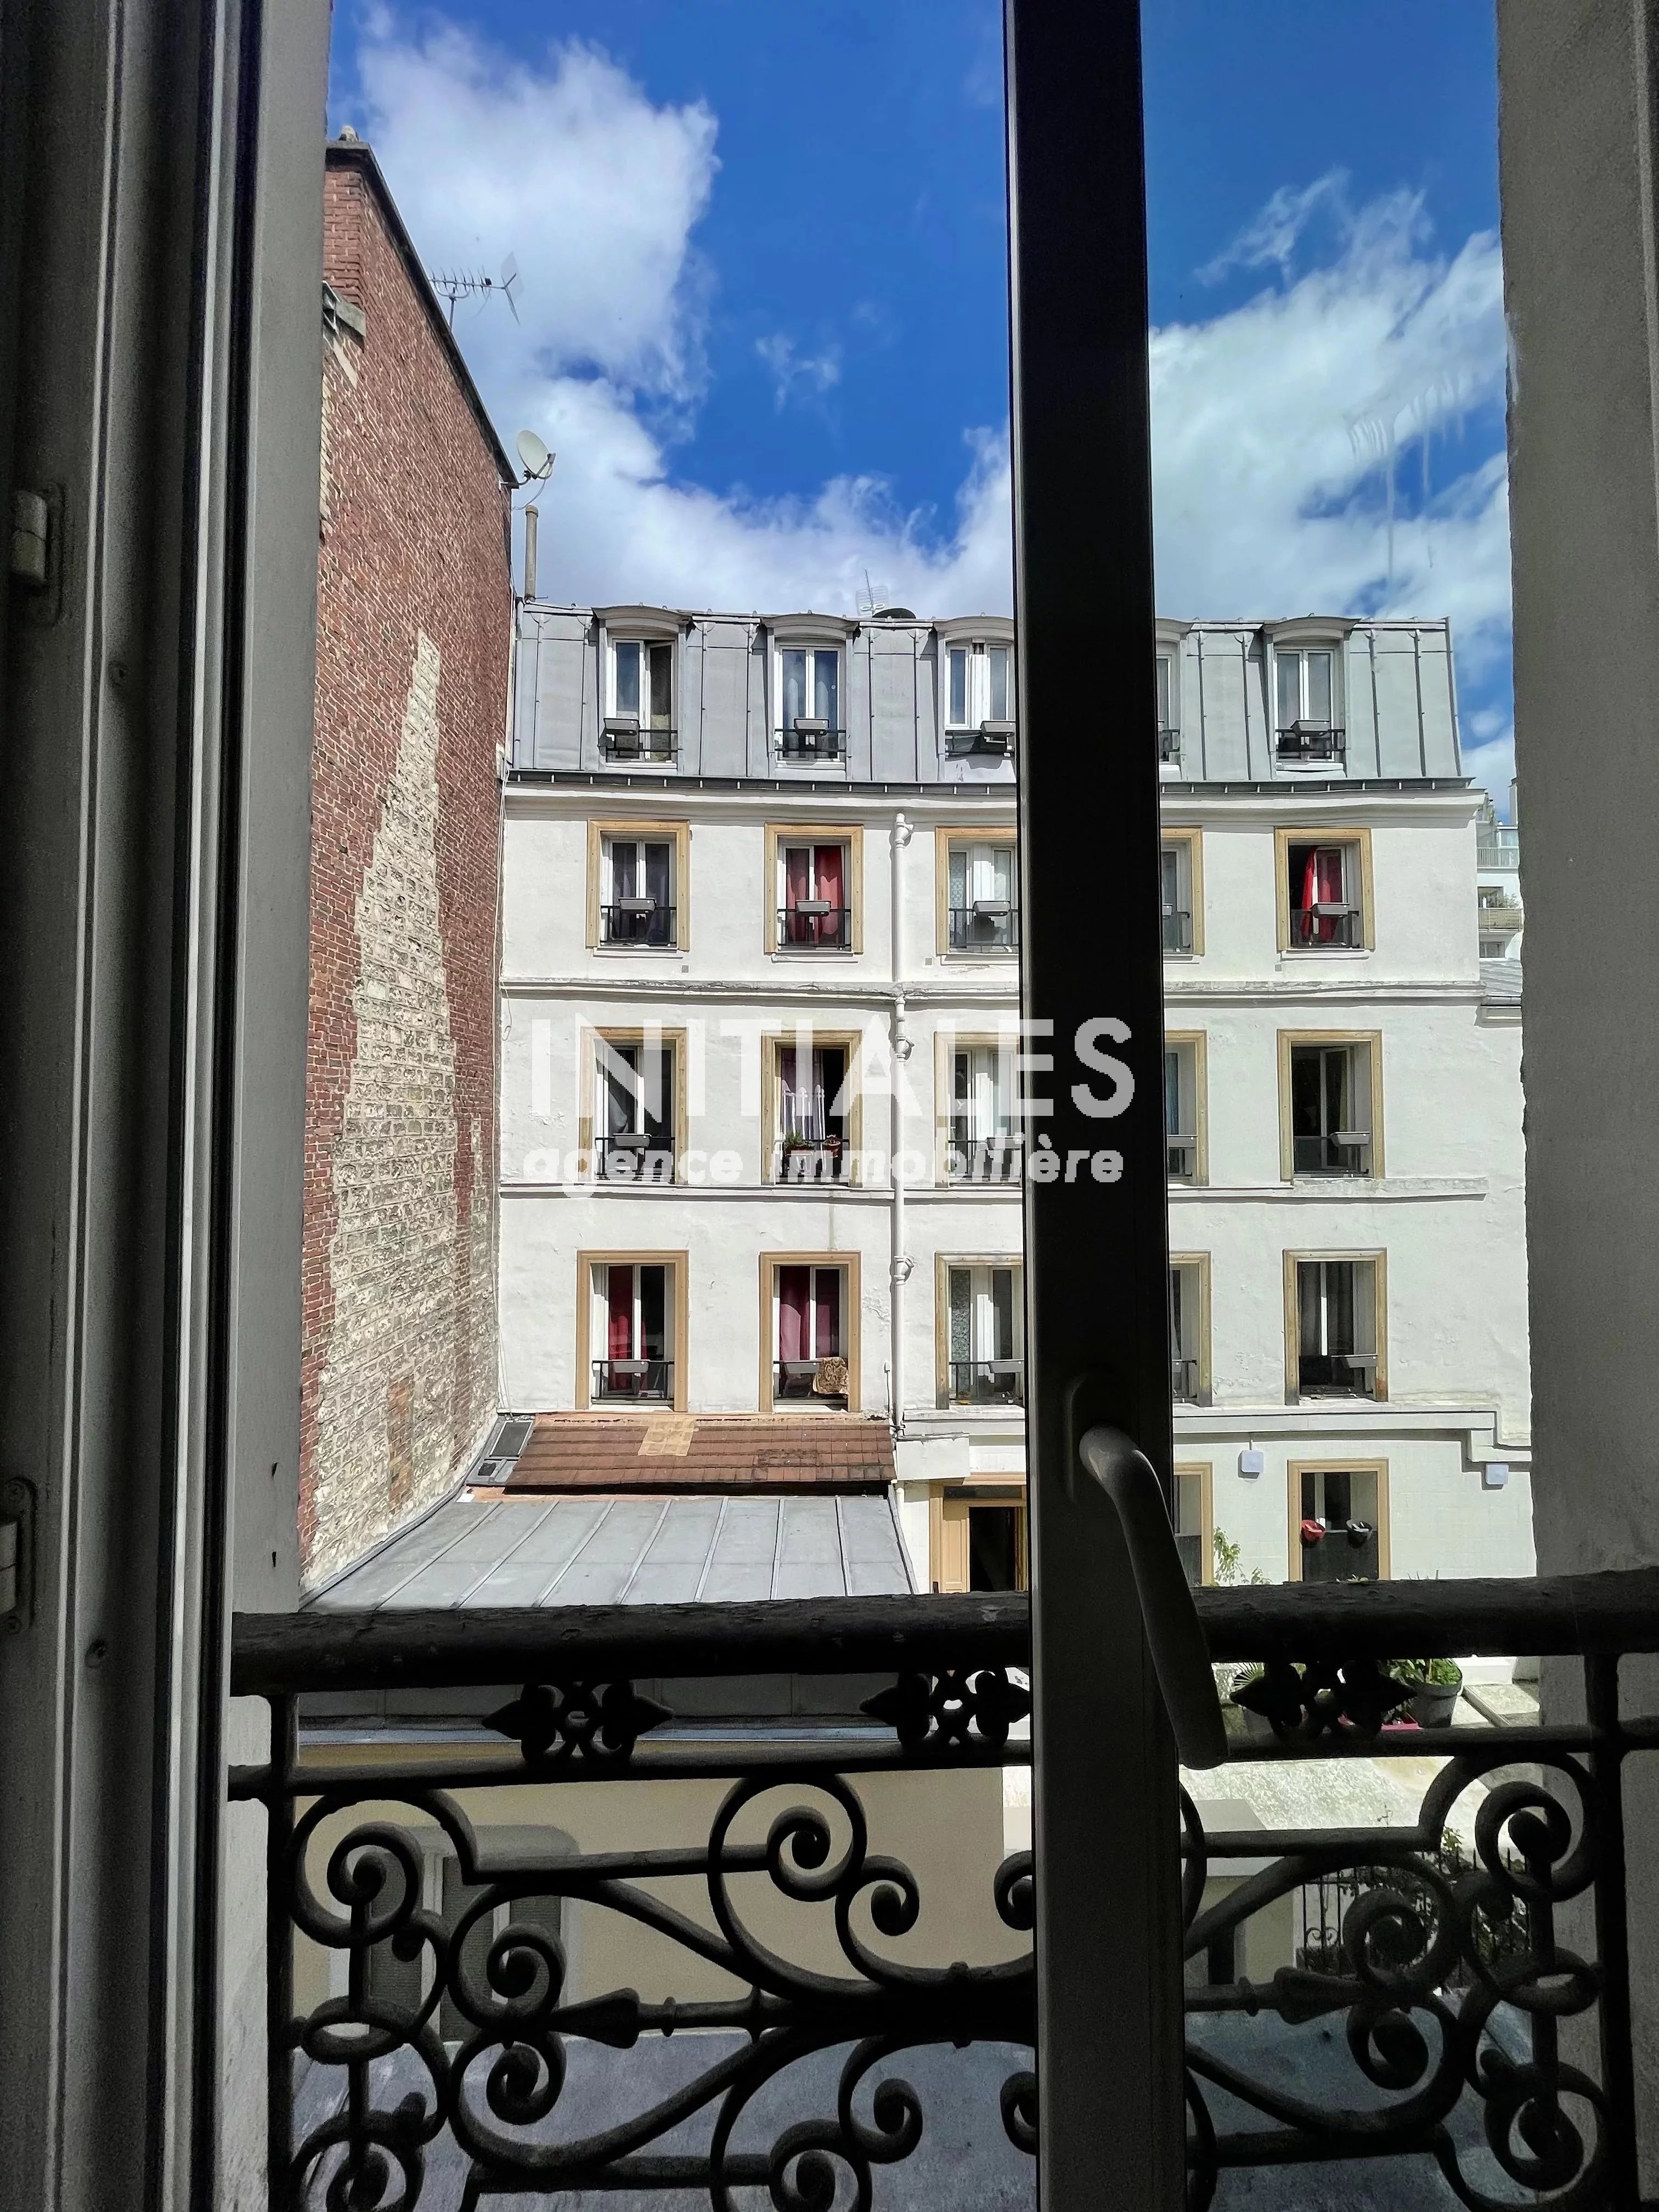 Sale Apartment - Paris 18th (Paris 18ème) Grandes-Carrières